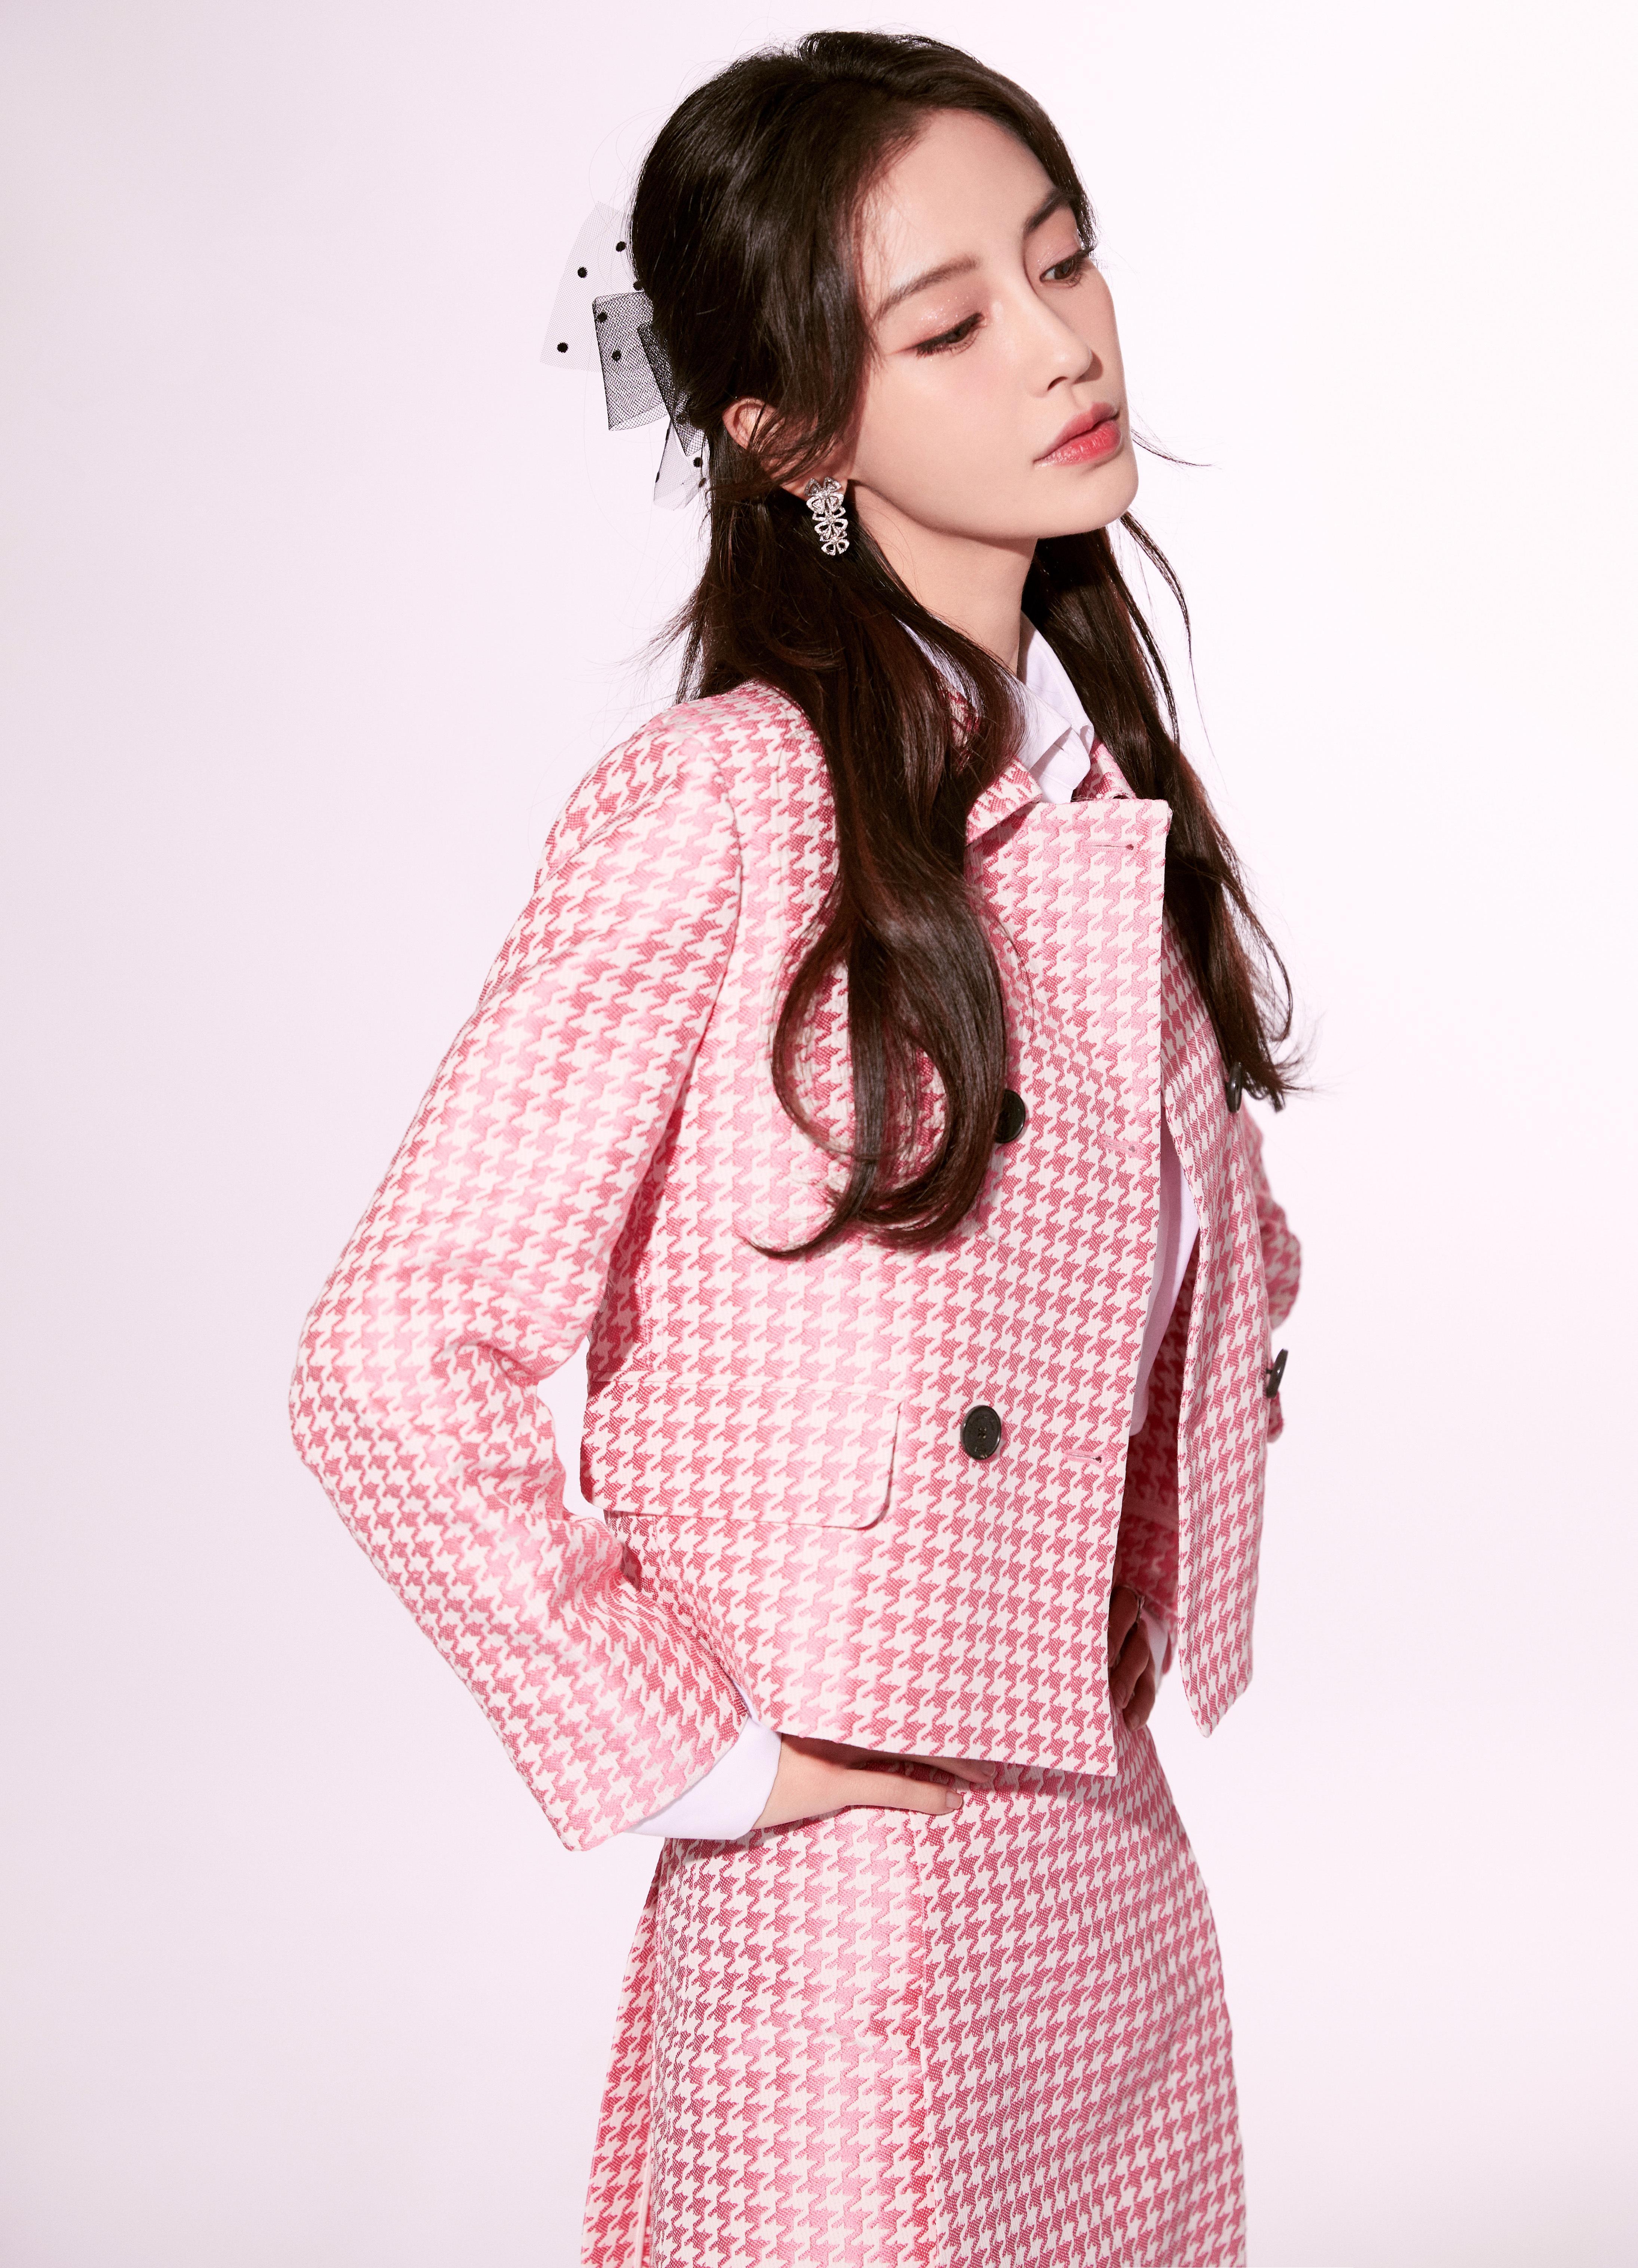 杨颖（Angelababy）粉色衬衫加短裙 清纯可爱活动写真,8